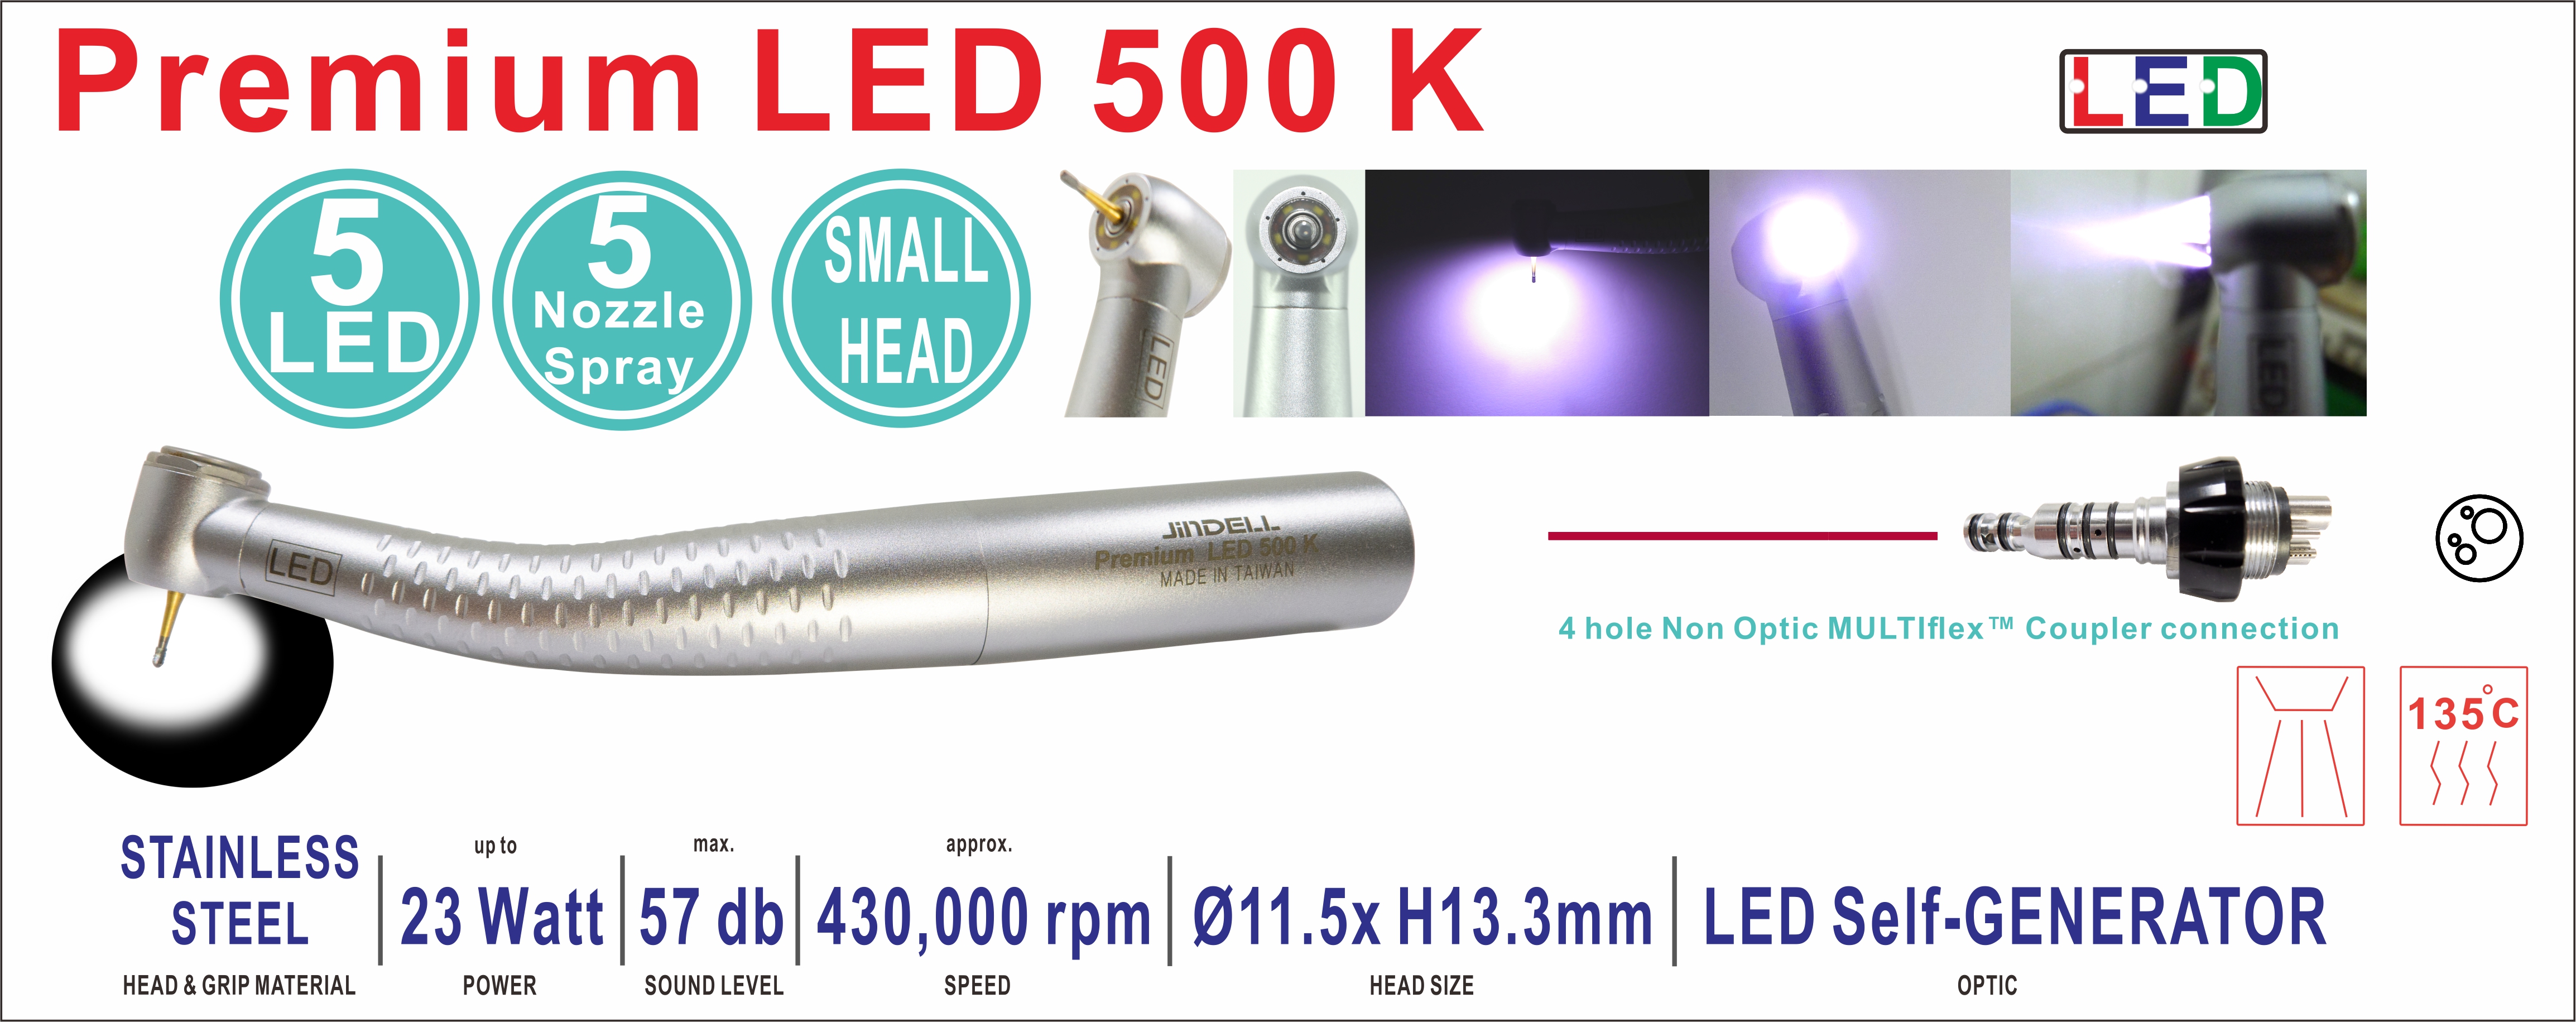 Premium LED 500K